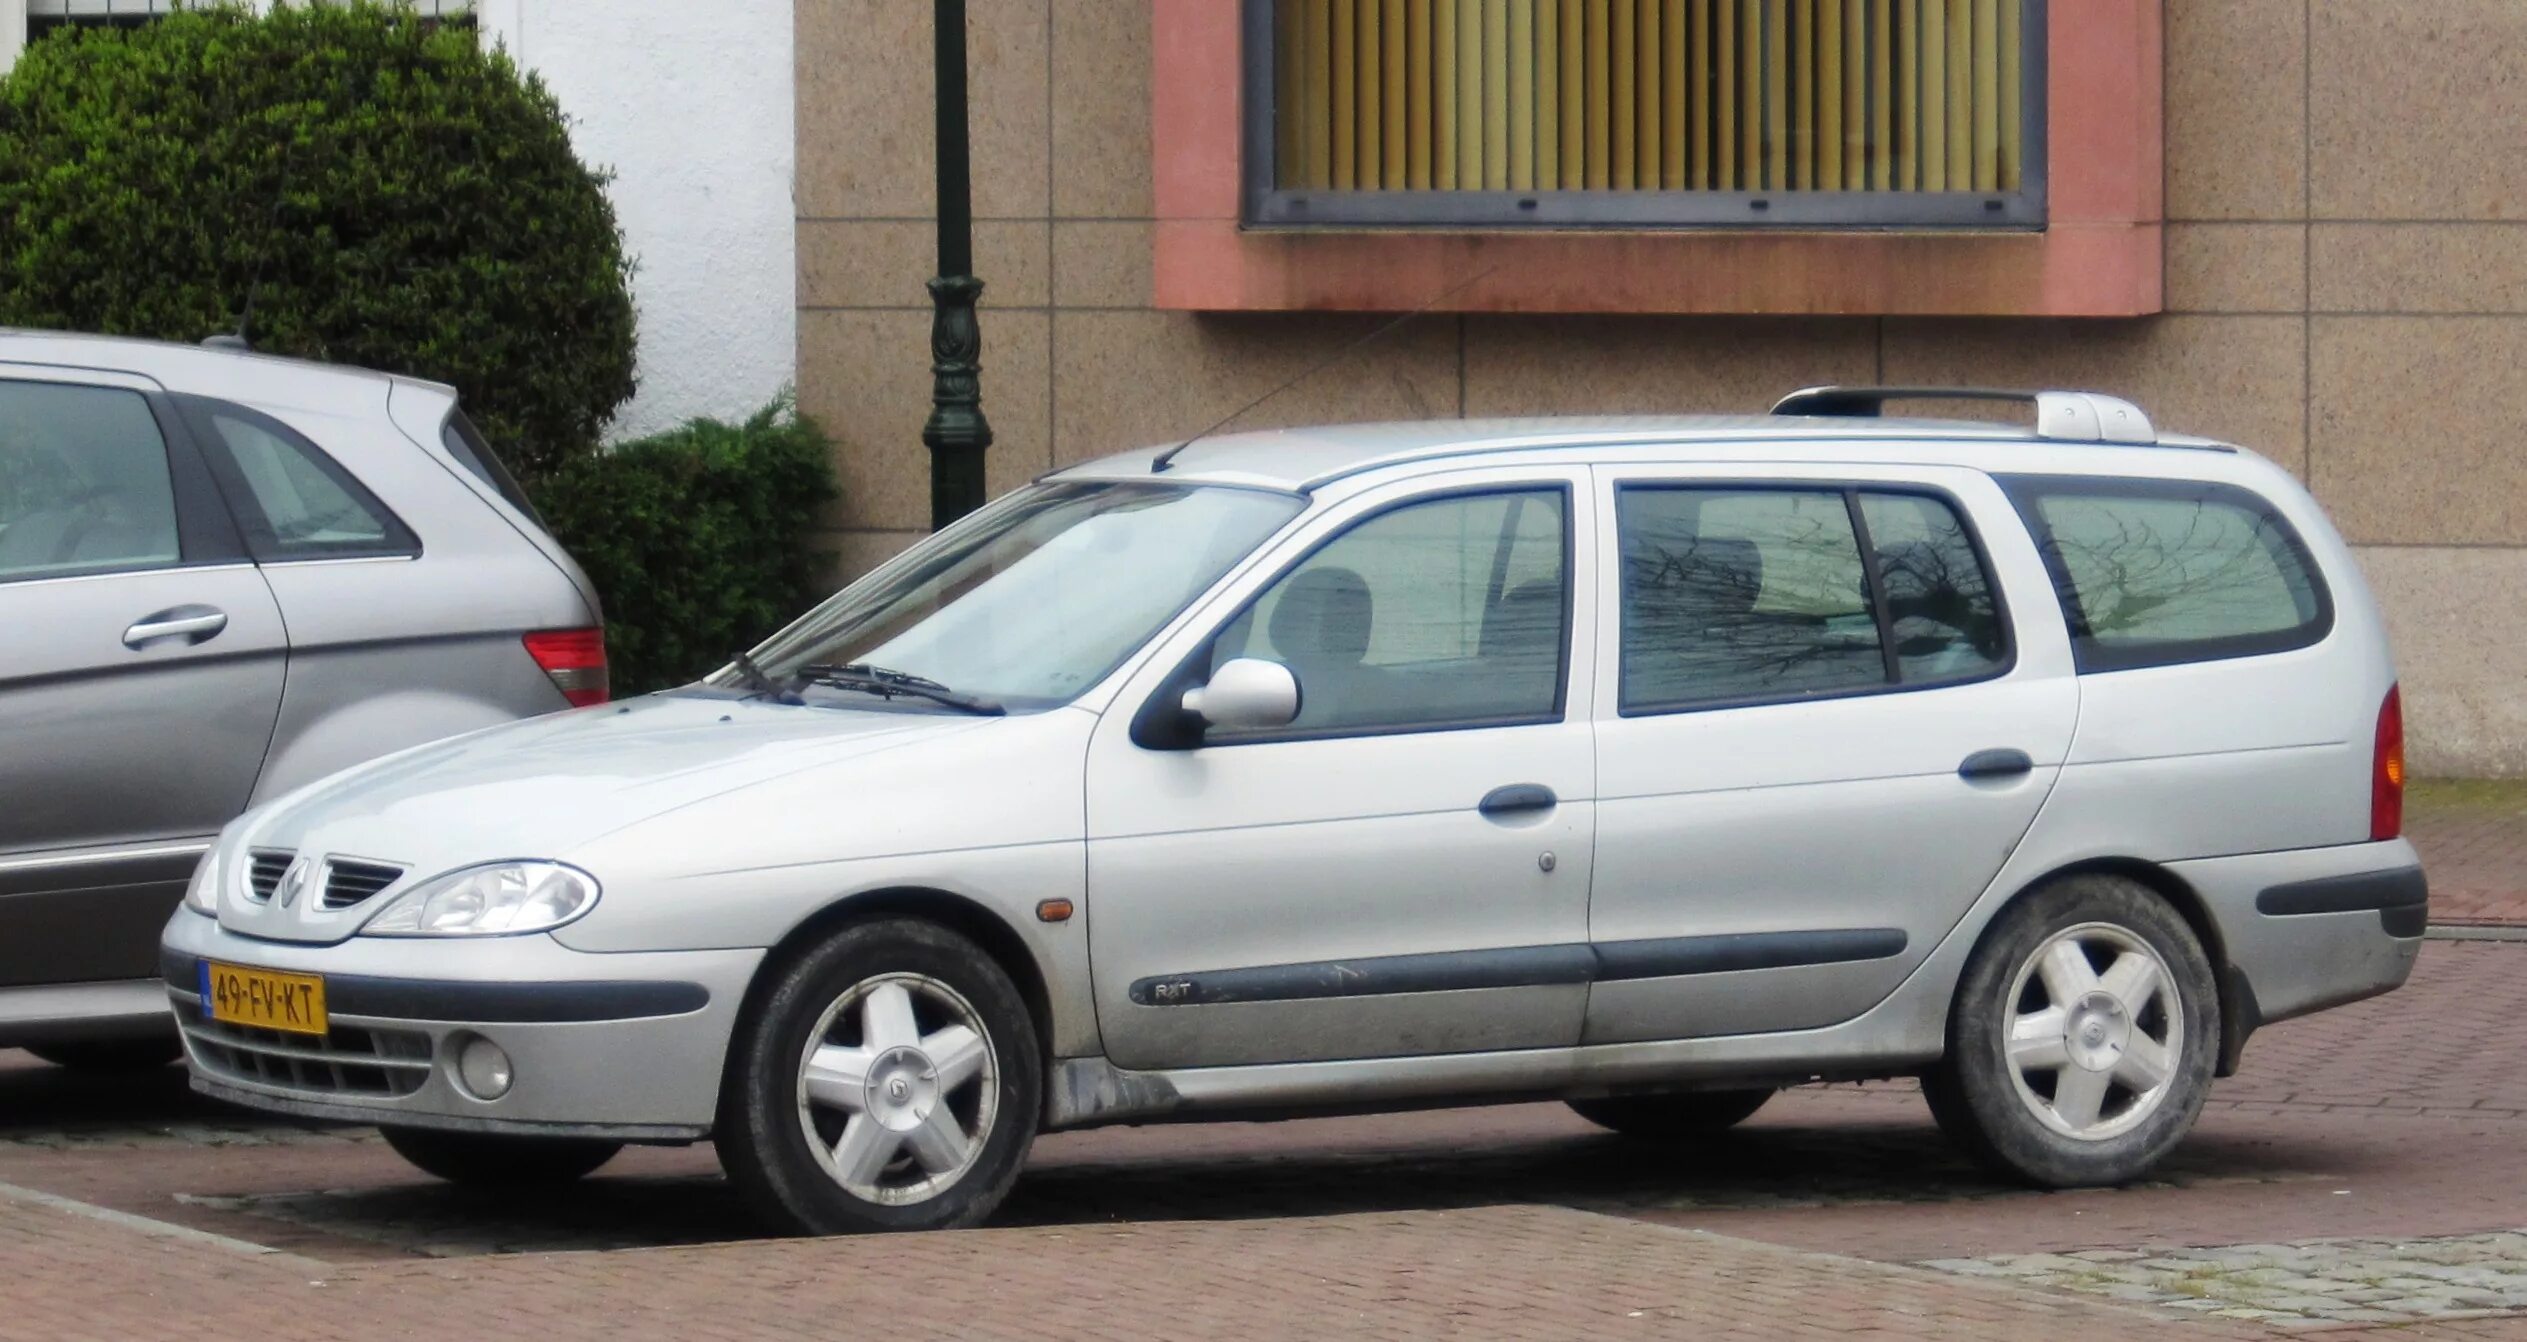 Renault Megane 2000. Renault Megane 1 2000. Рено Меган 2002 универсал. Renault Megane Wagon 1. Рено меган универсал 1.6